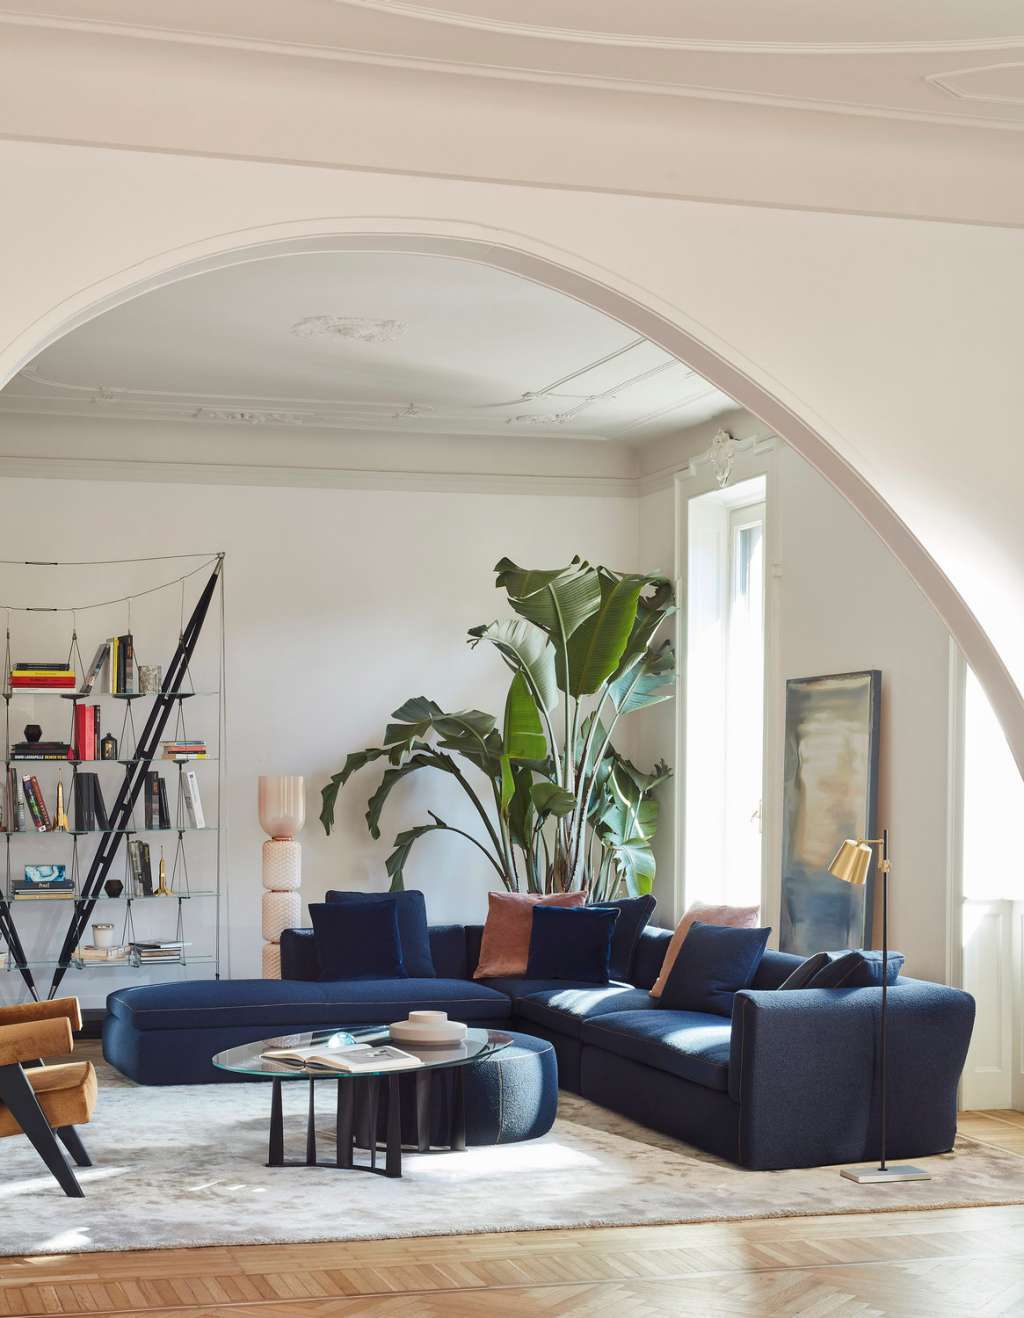 Editie Op de grond Jane Austen 3 Fauteuil Grand Confort, grand modèle Sofa by Le Corbusier, Pierre  Jeanneret, Charlotte Perriand | Cassina